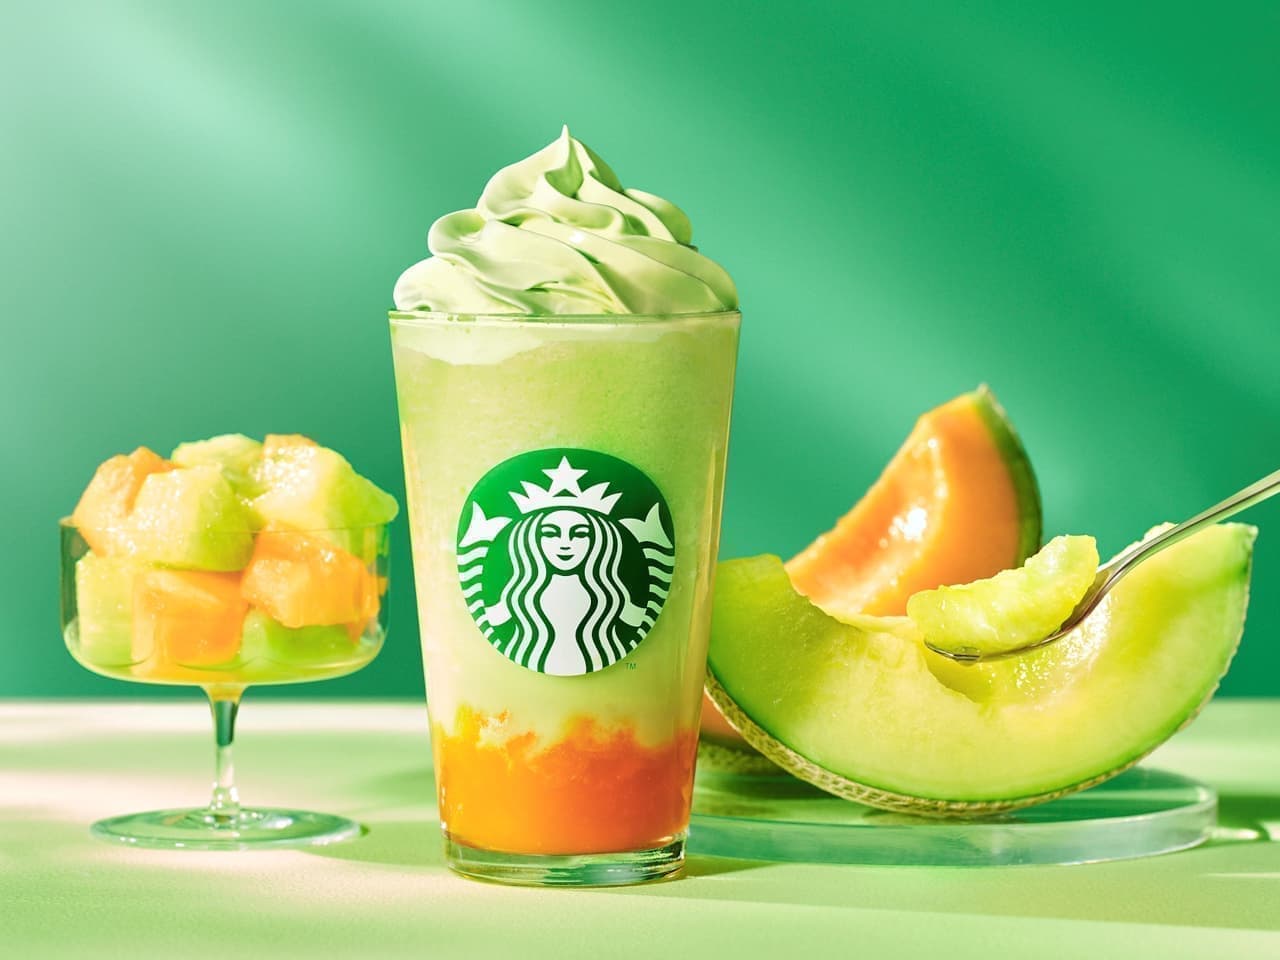 New Starbucks "The Melon of Melon Frappuccino"